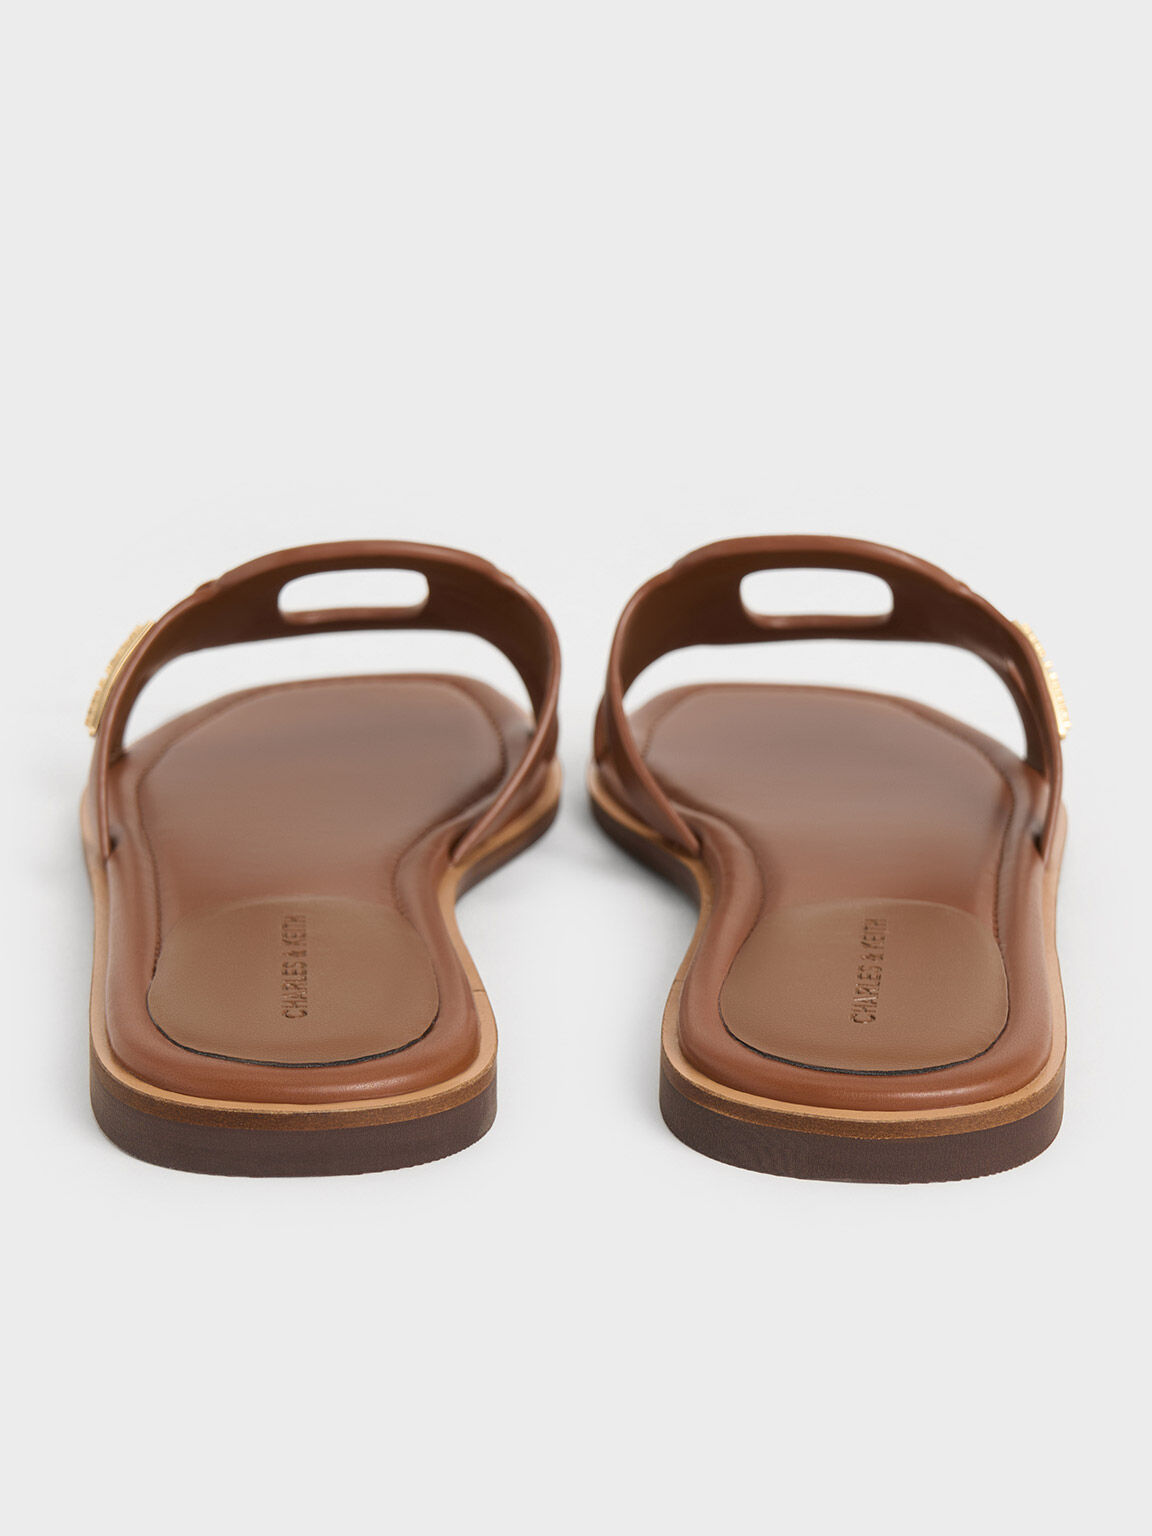 Easley Cut-Out Slide Sandals, Caramel, hi-res